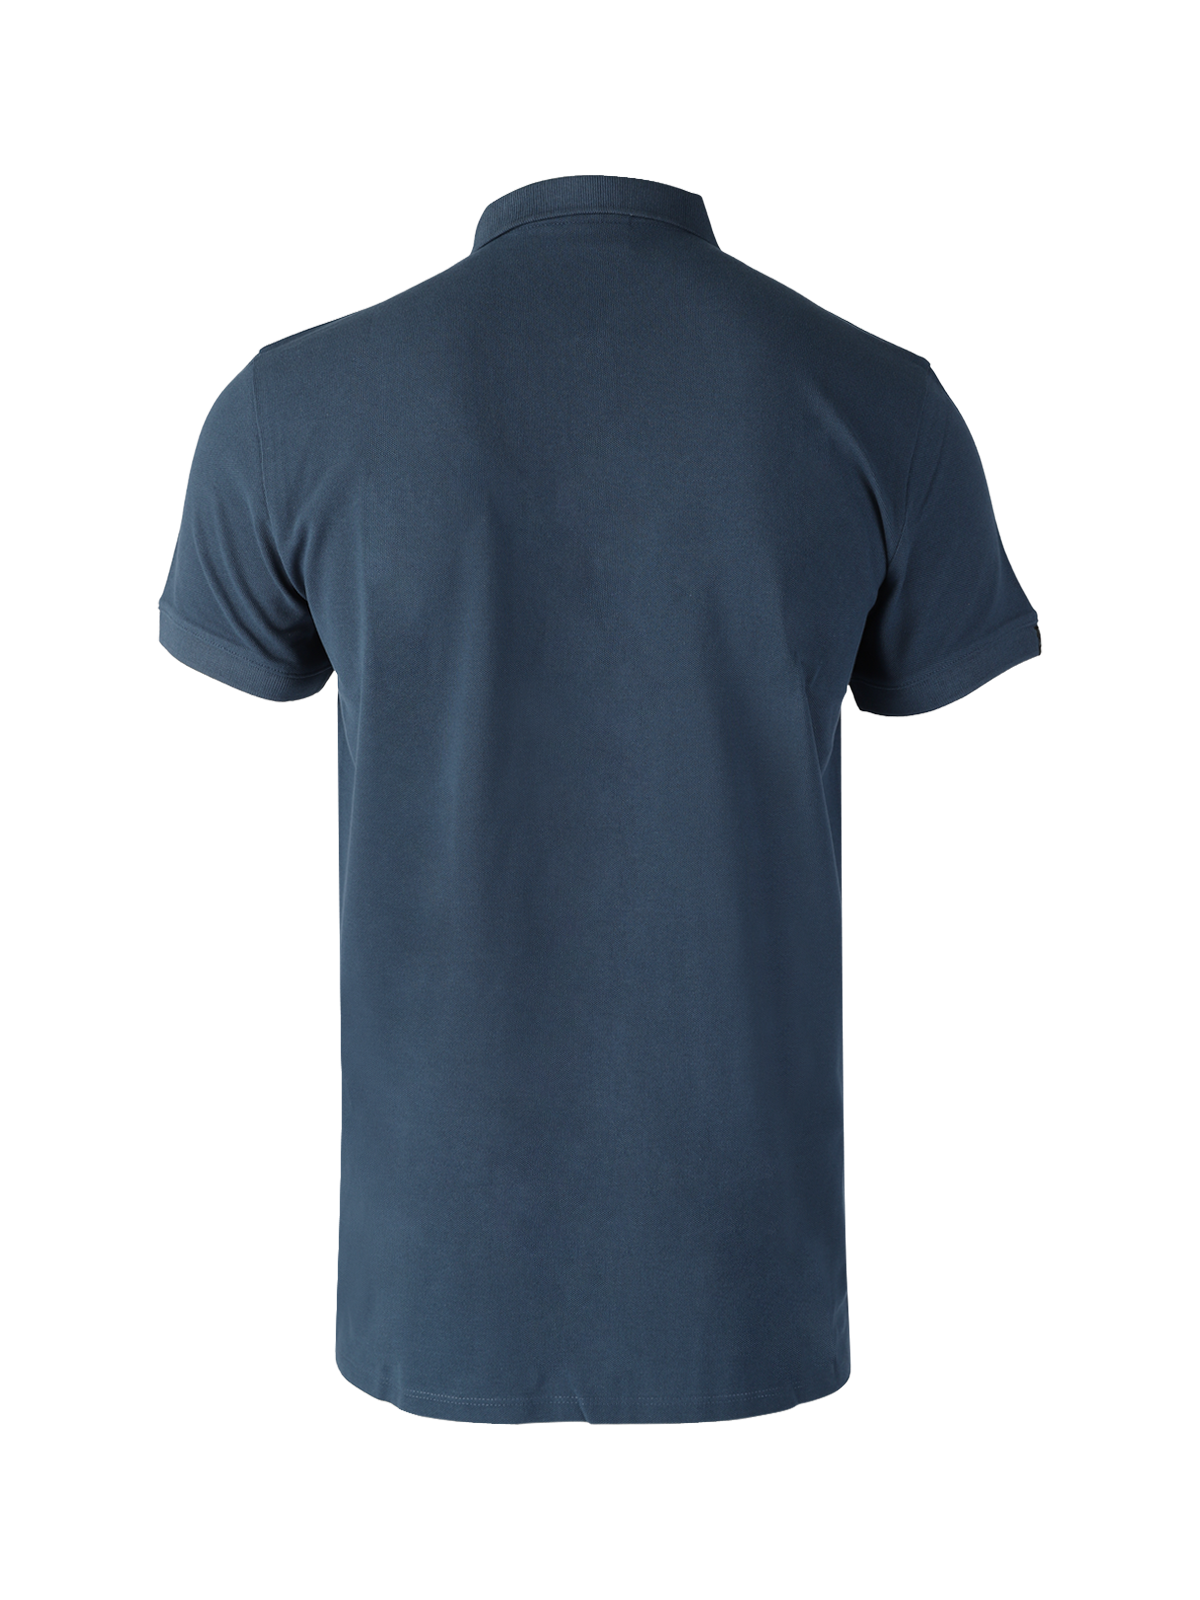 Frunot-II Herren Poloshirt | Blau